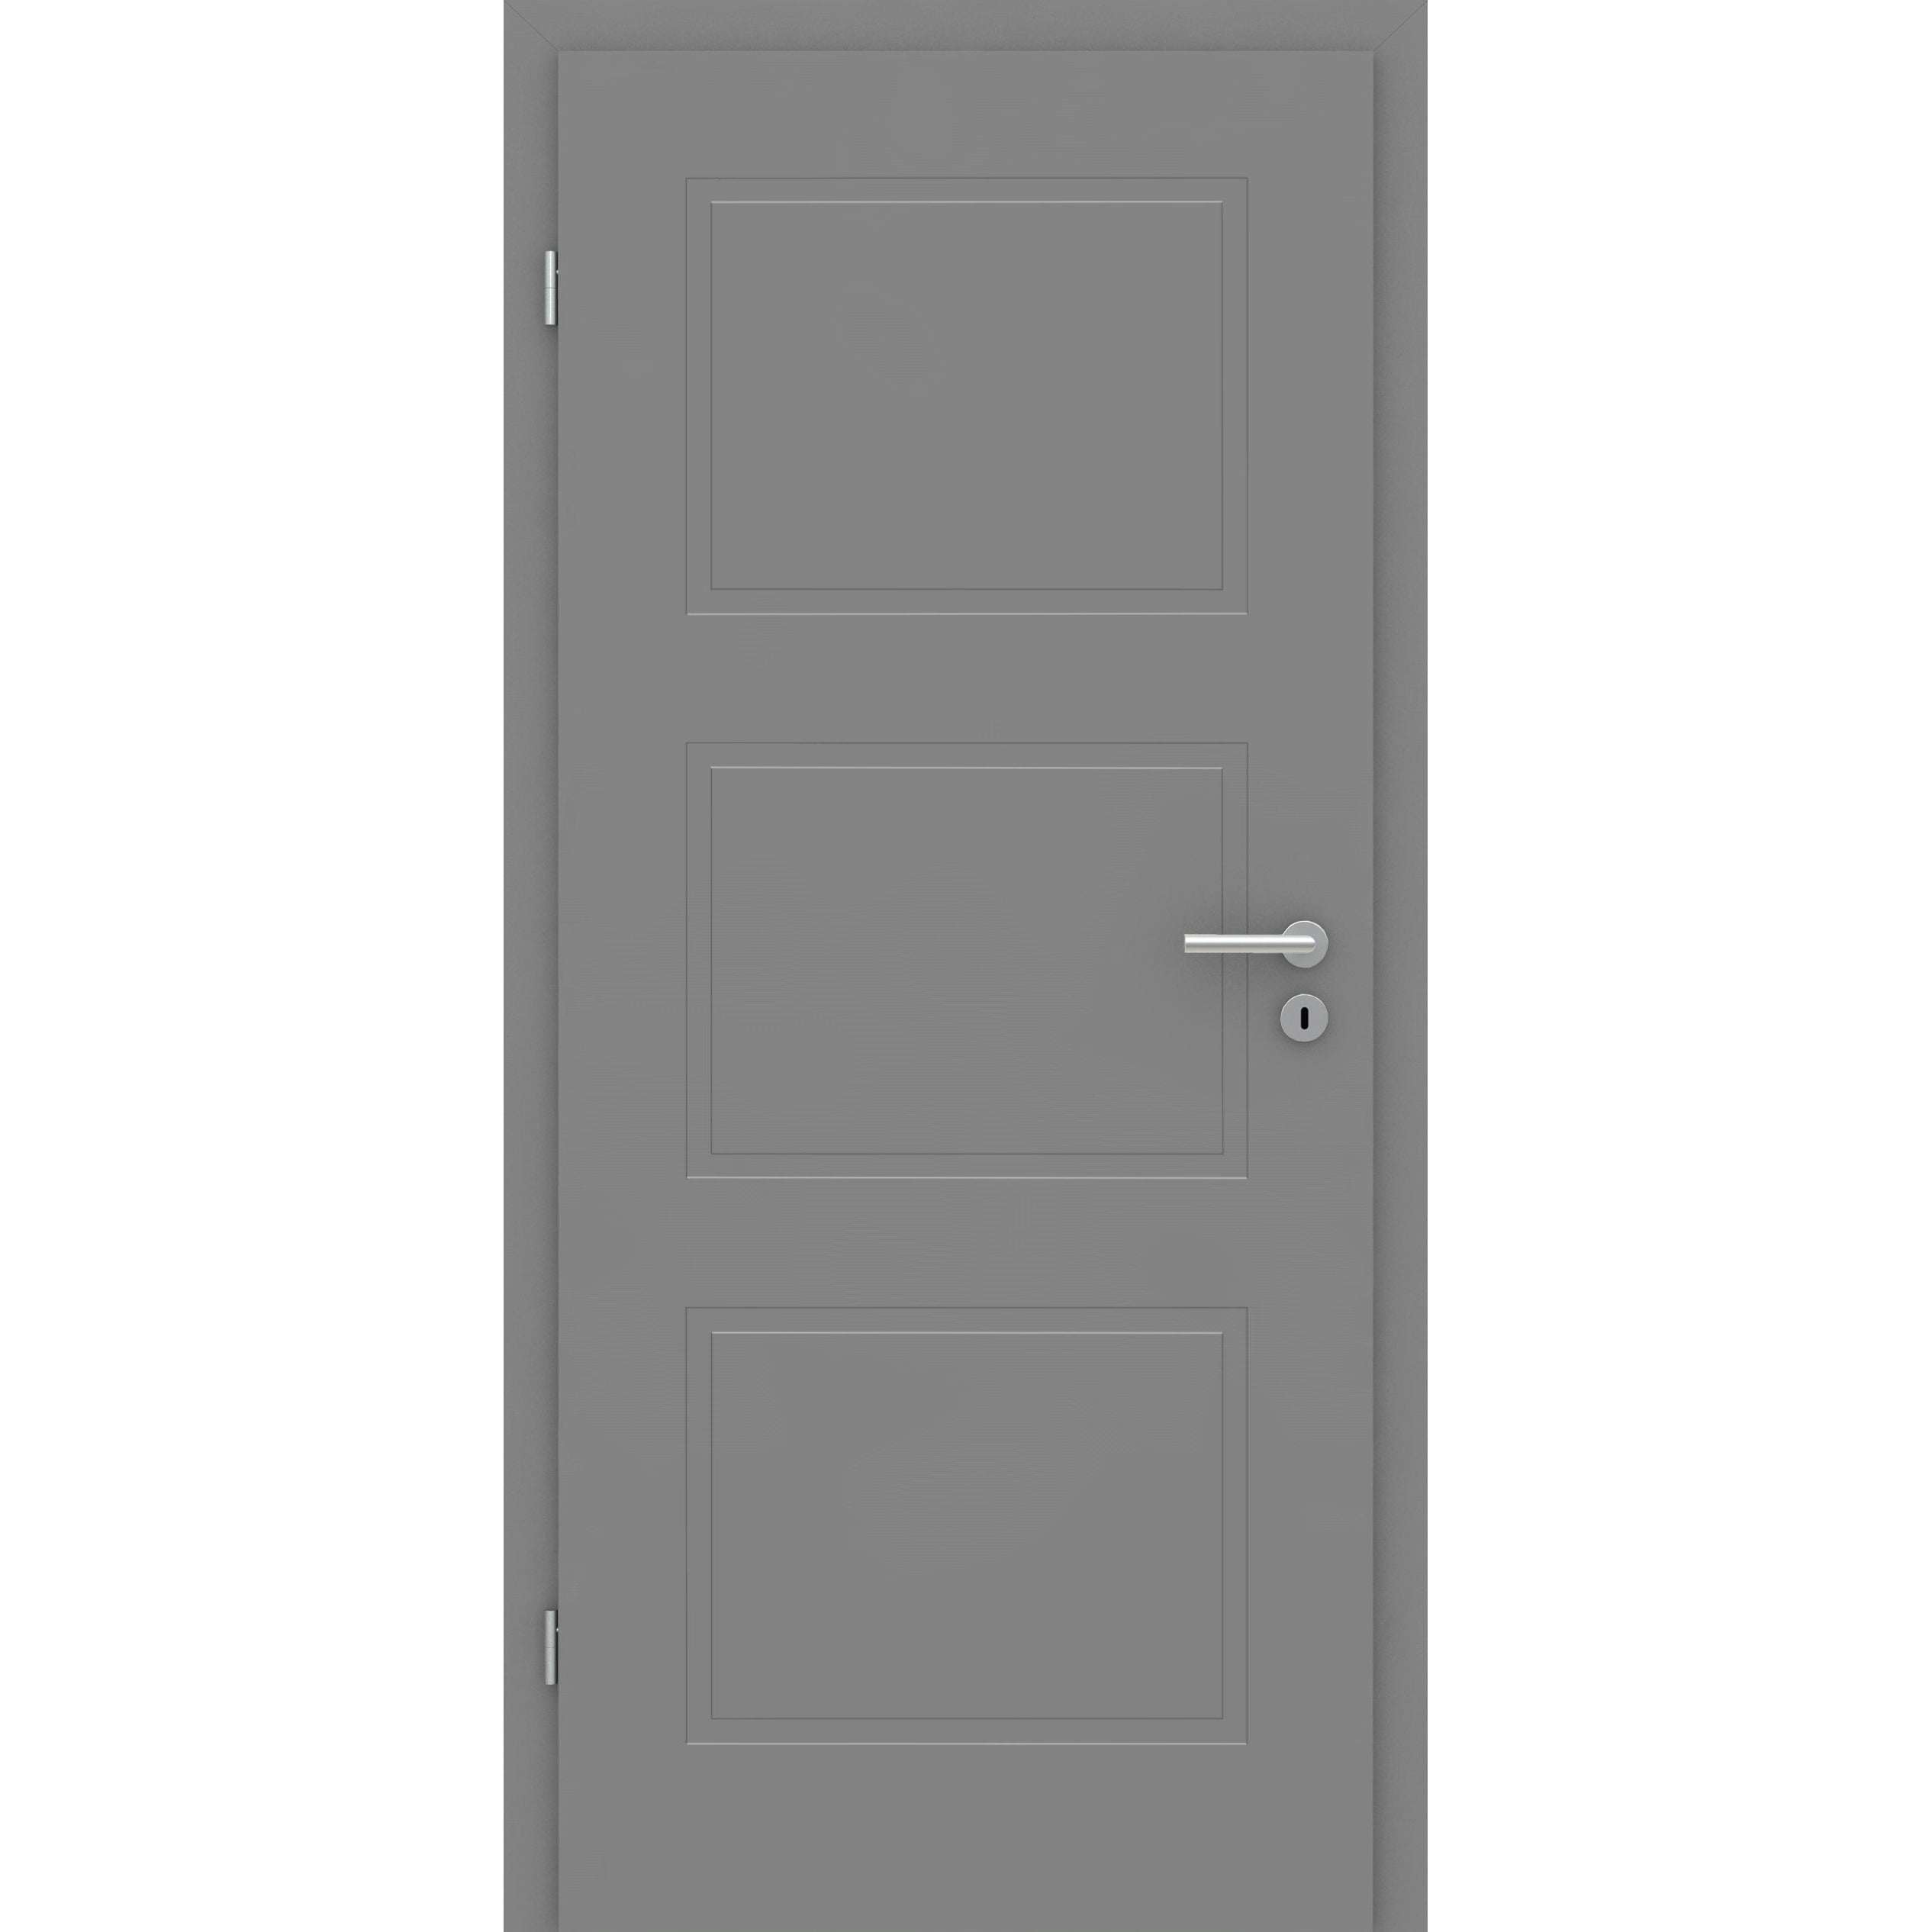 Wohnungseingangstür grau 3 Kassetten Designkante SK2 / KK3 - Modell Stiltür M37